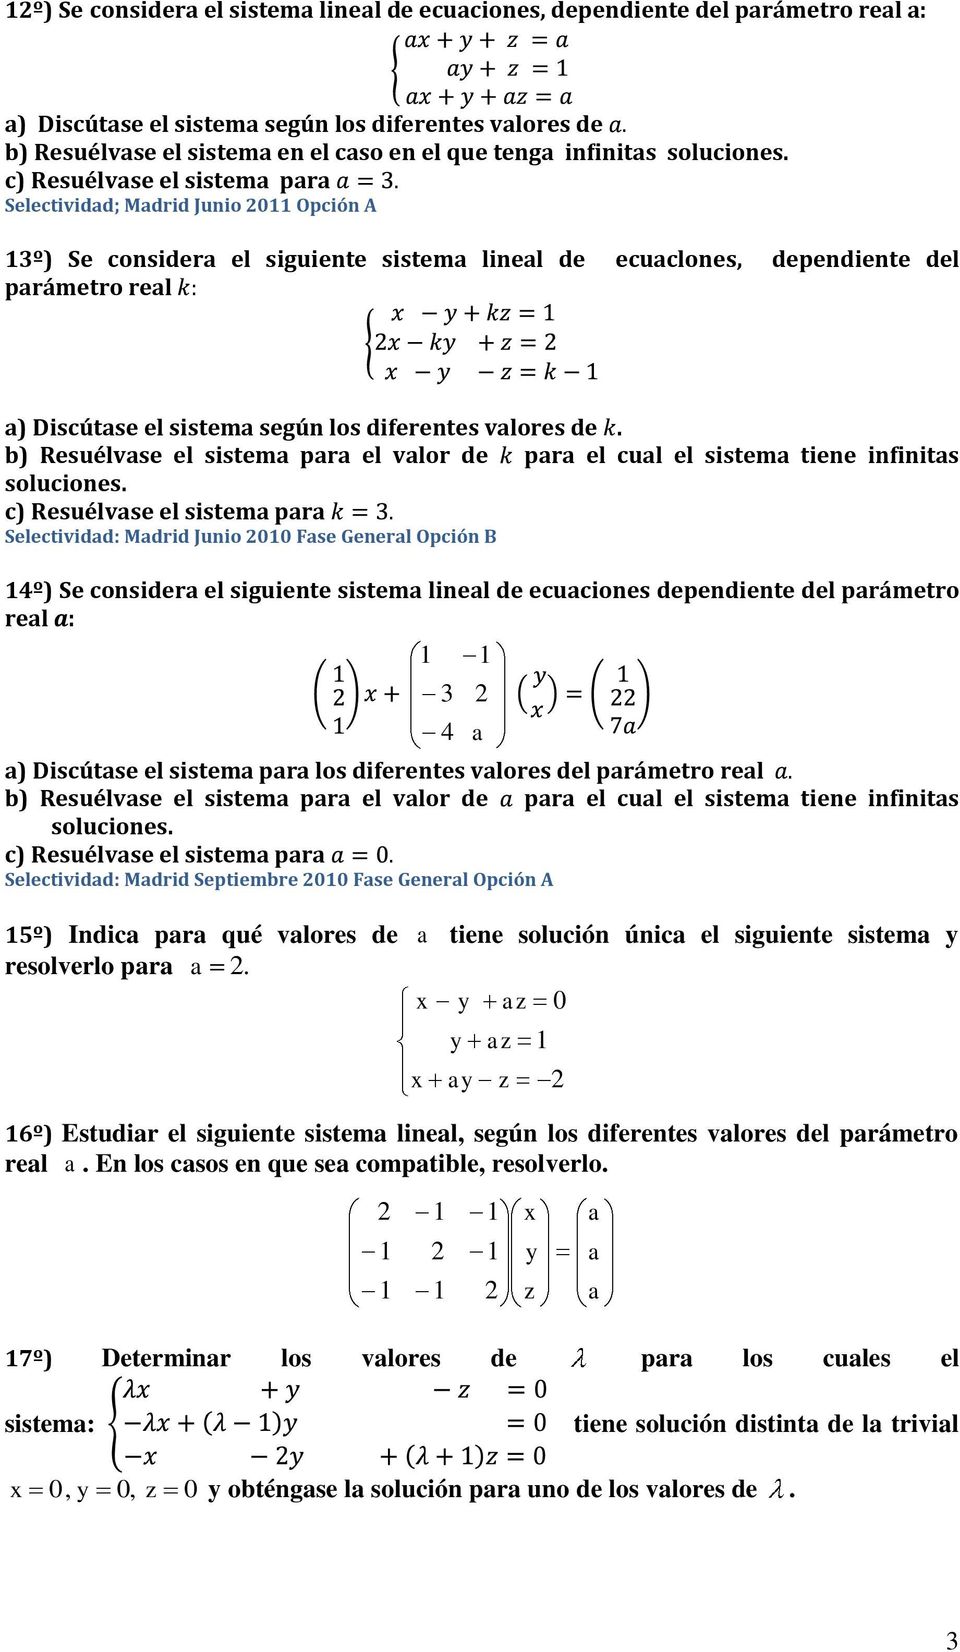 b) Resuélvse el sistem pr el vlor de pr el cul el sistem tiene infinits soluciones.